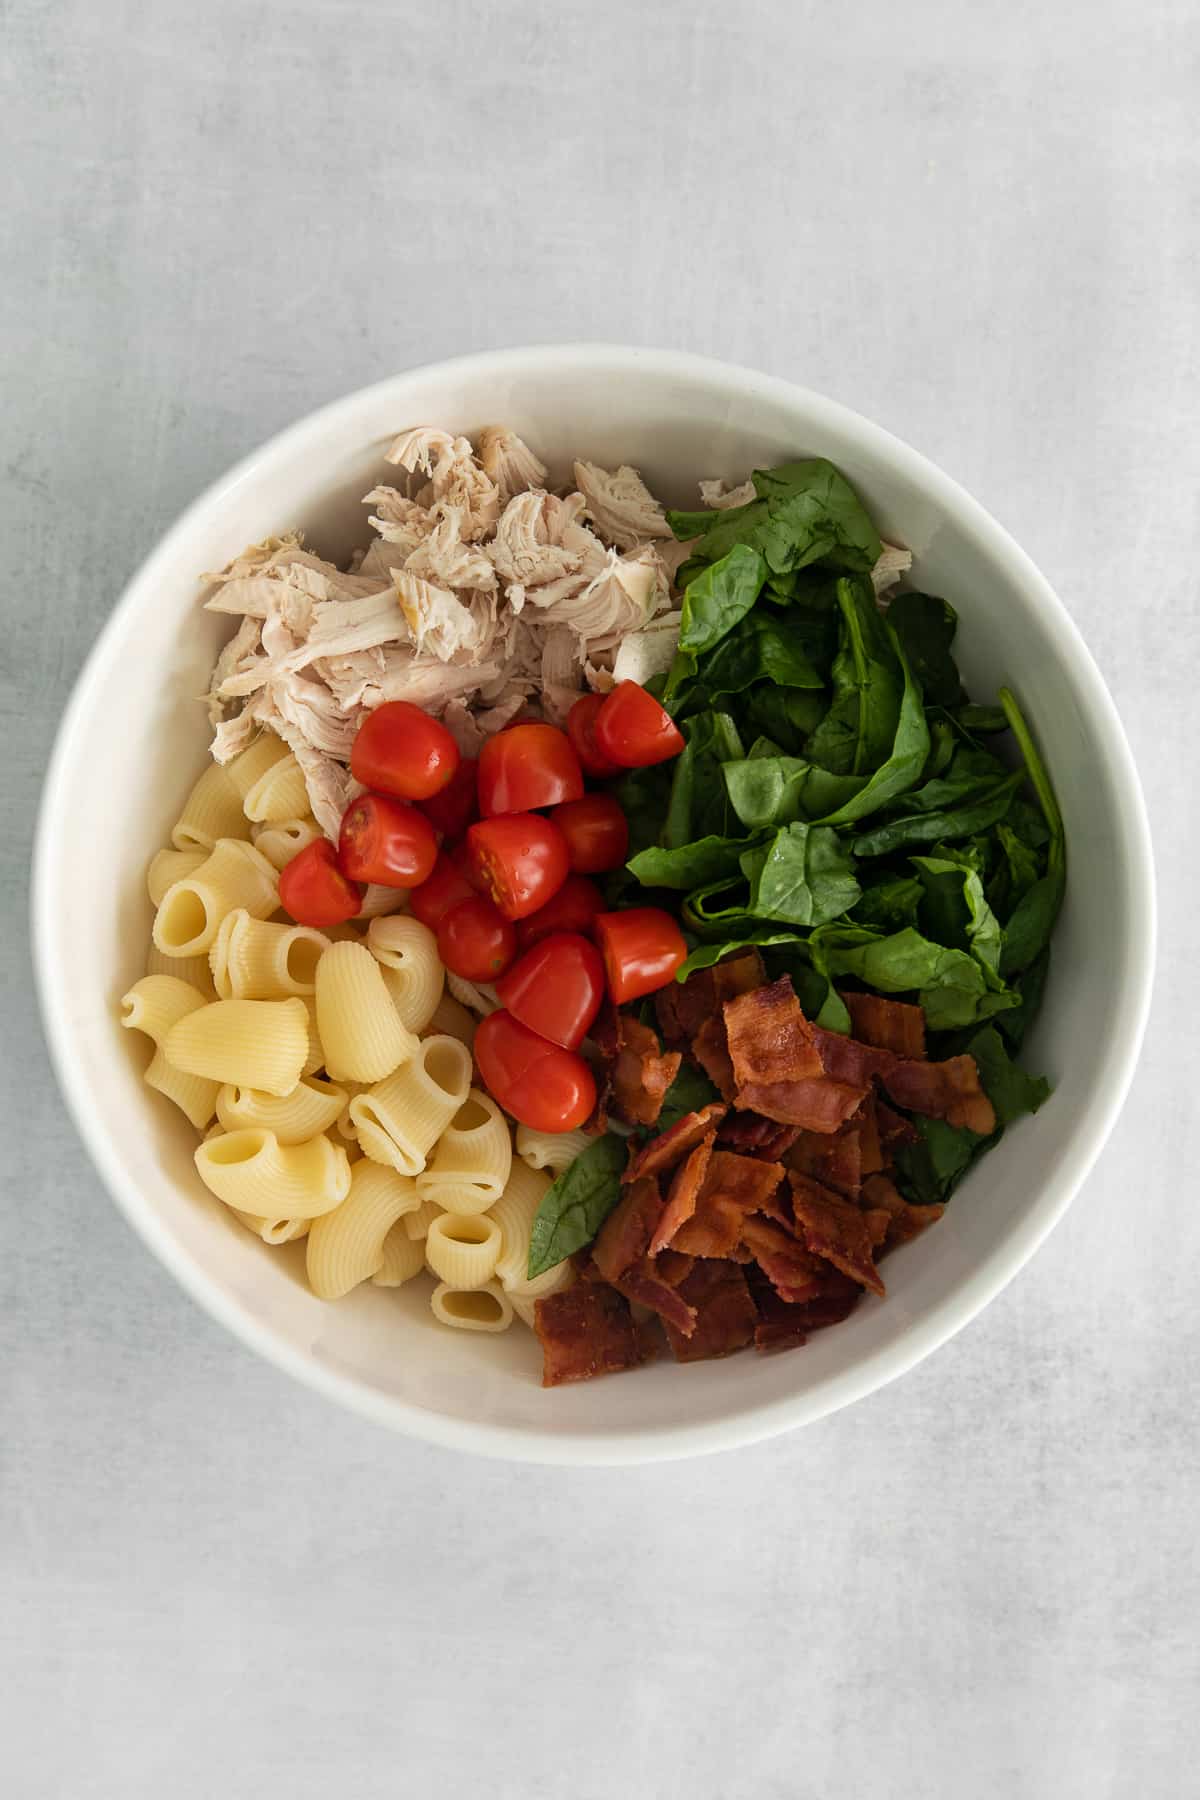 Ingredients for gorgonzola chicken pasta salad in a bowl.